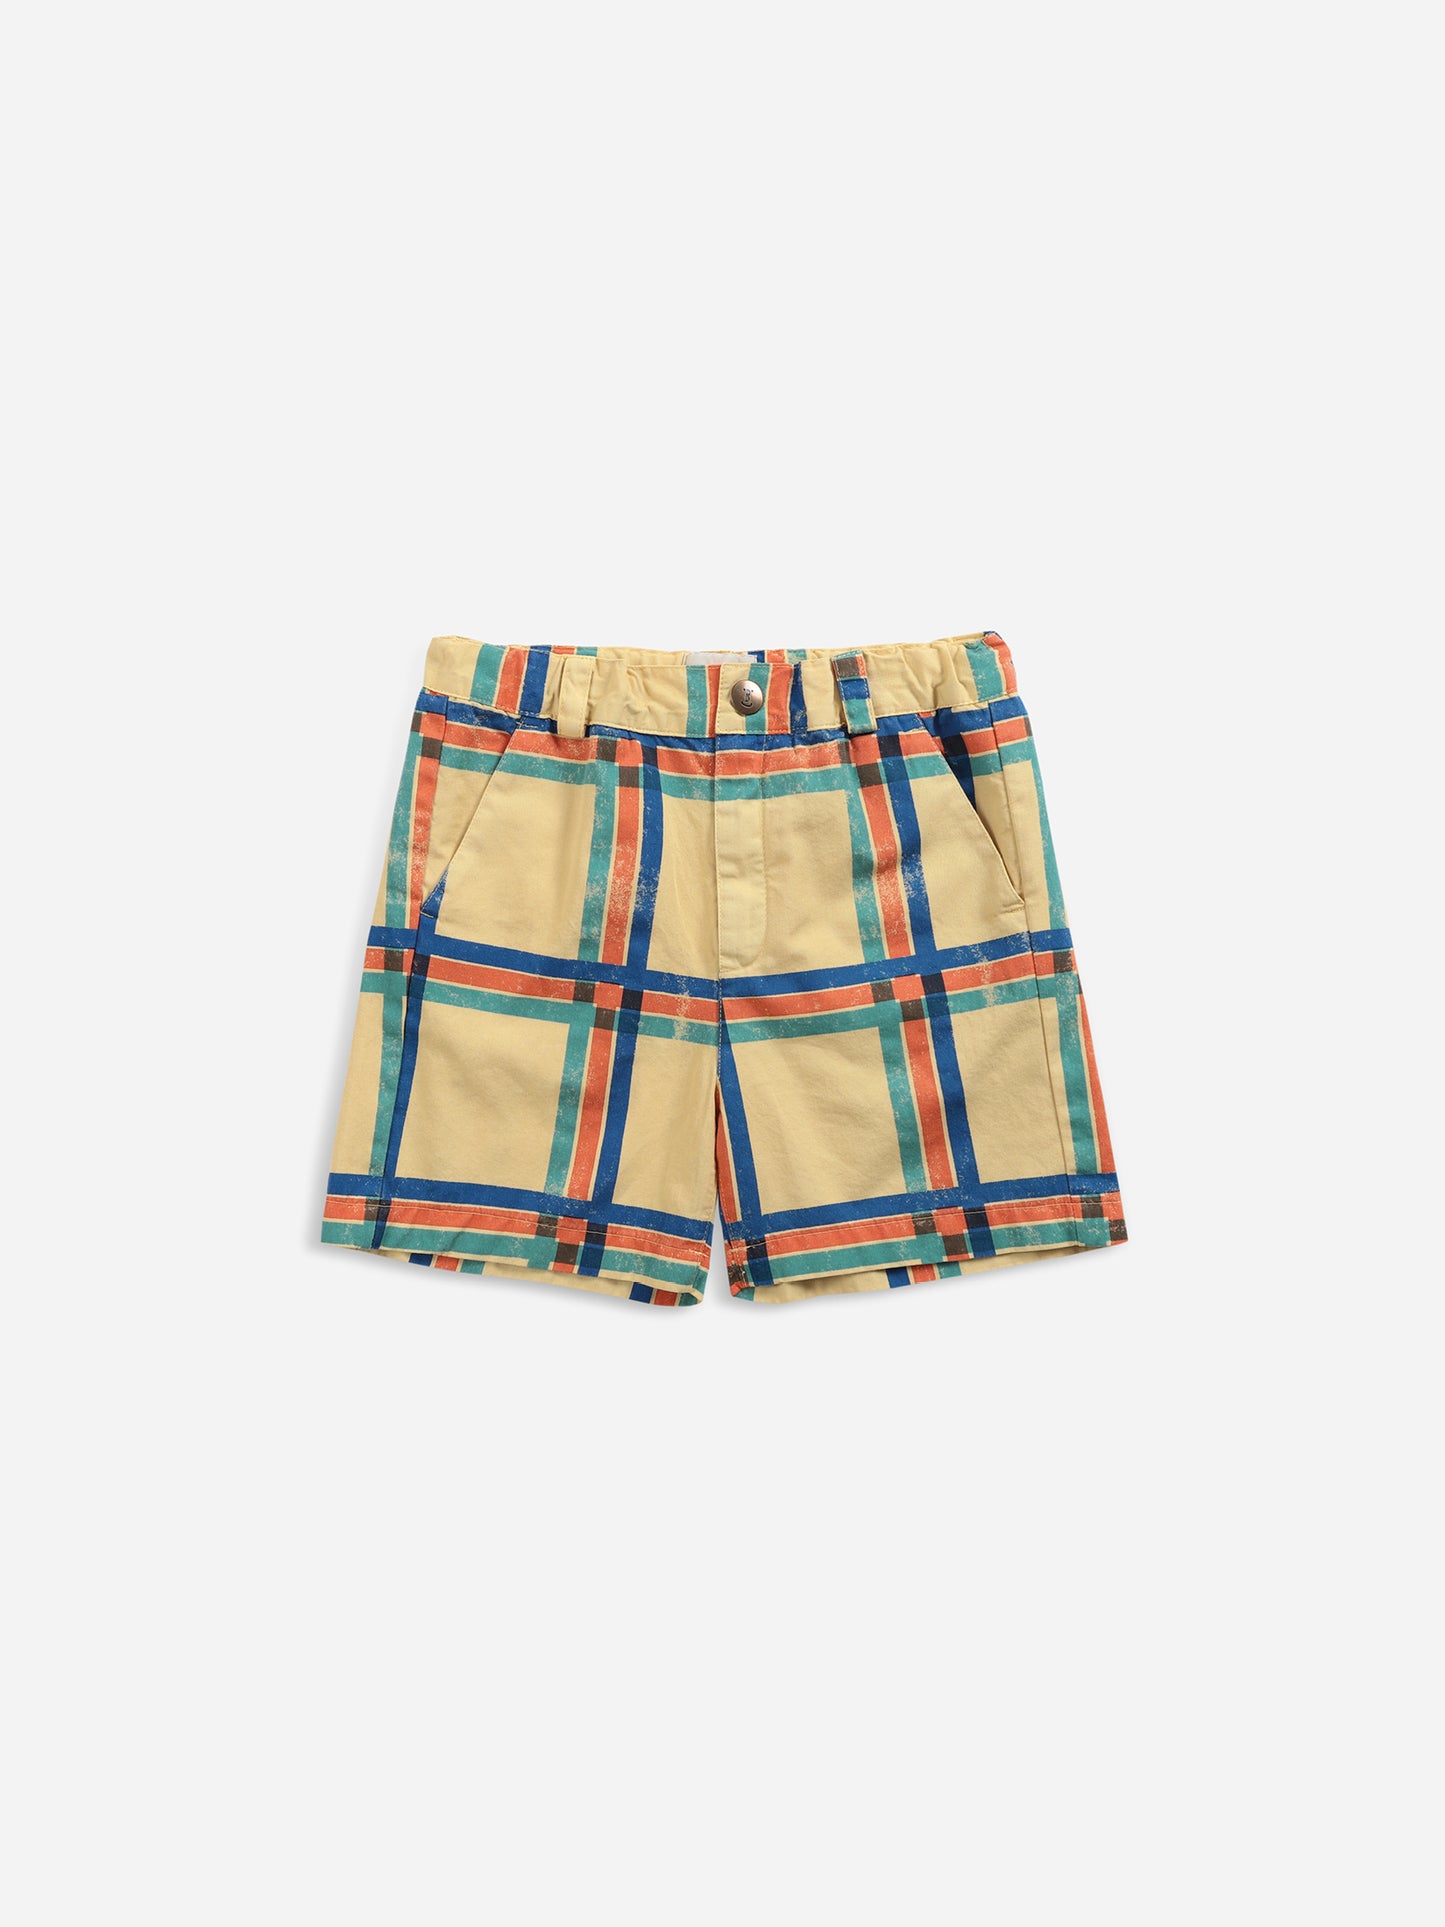 Square Woven Bermuda Shorts